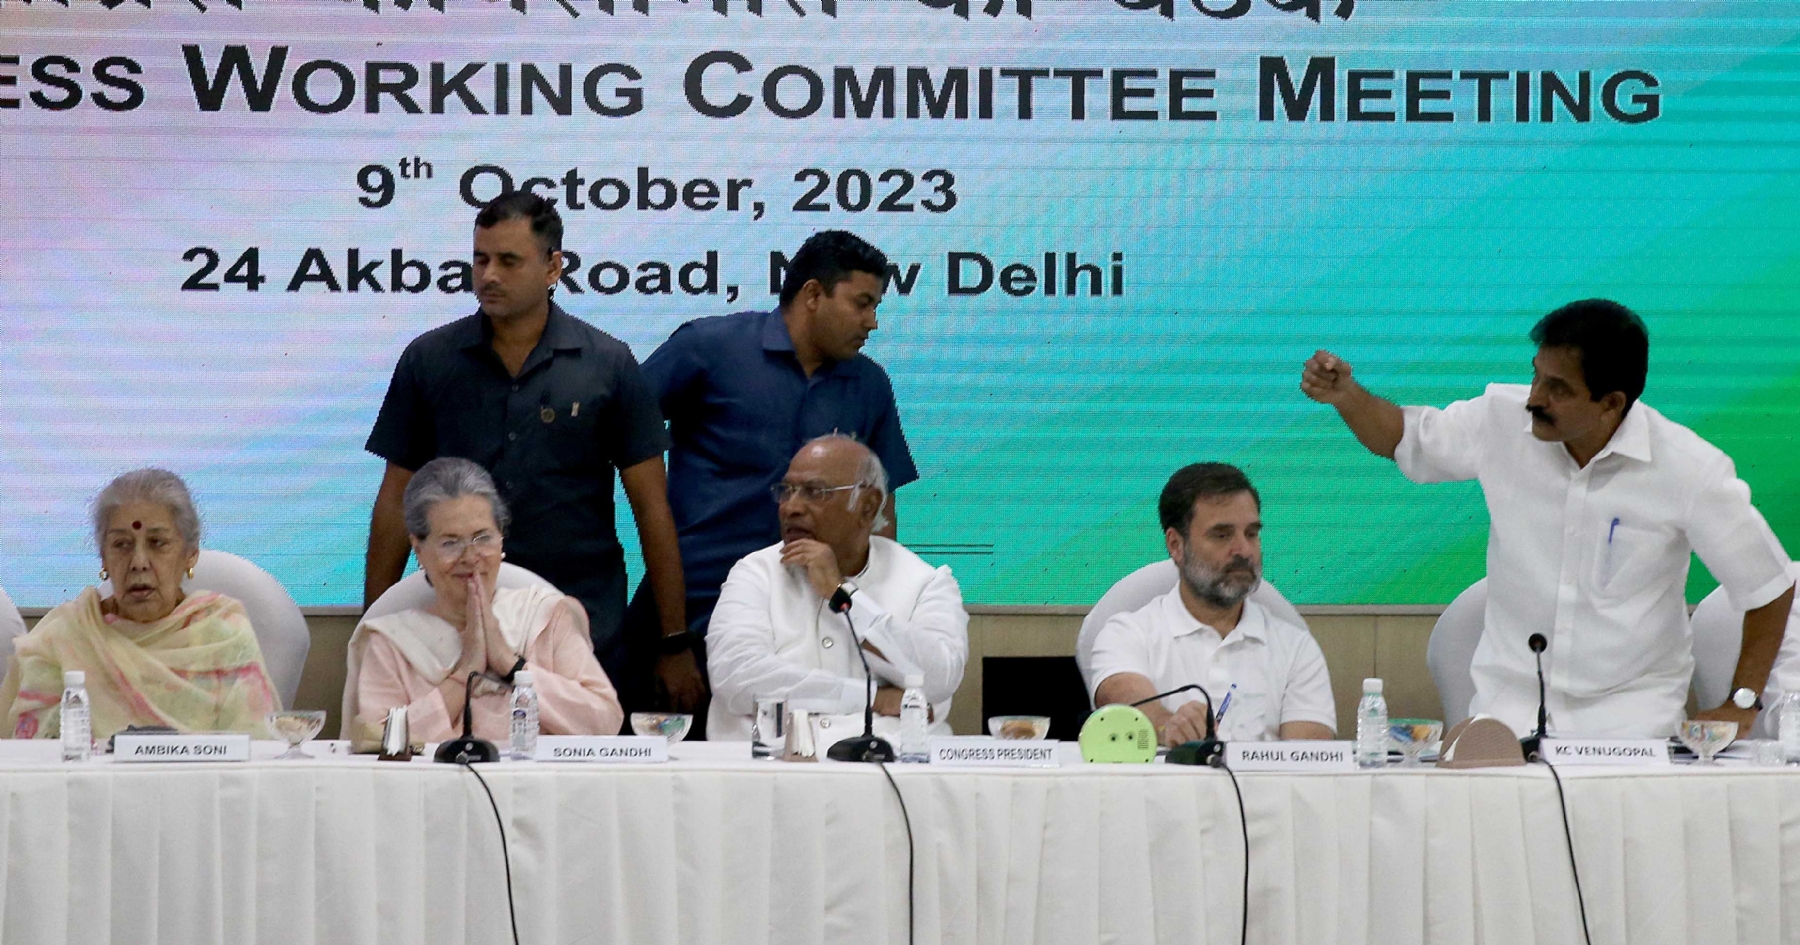 नई दिल्ली में समवार 09 अक्टूबर को एआईसीसी मुख्यालय पर कांग्रेस कार्य समिति की बैठक में भागलेते सोनिया गांधी और कांग्रेस के राष्ट्रीय अध्यक्ष मल्लिकार्जुन खड़गे और राहुल गांधी व अन्य। हिन्दुस्थान समाचार फोटो गणेश बिष्ट